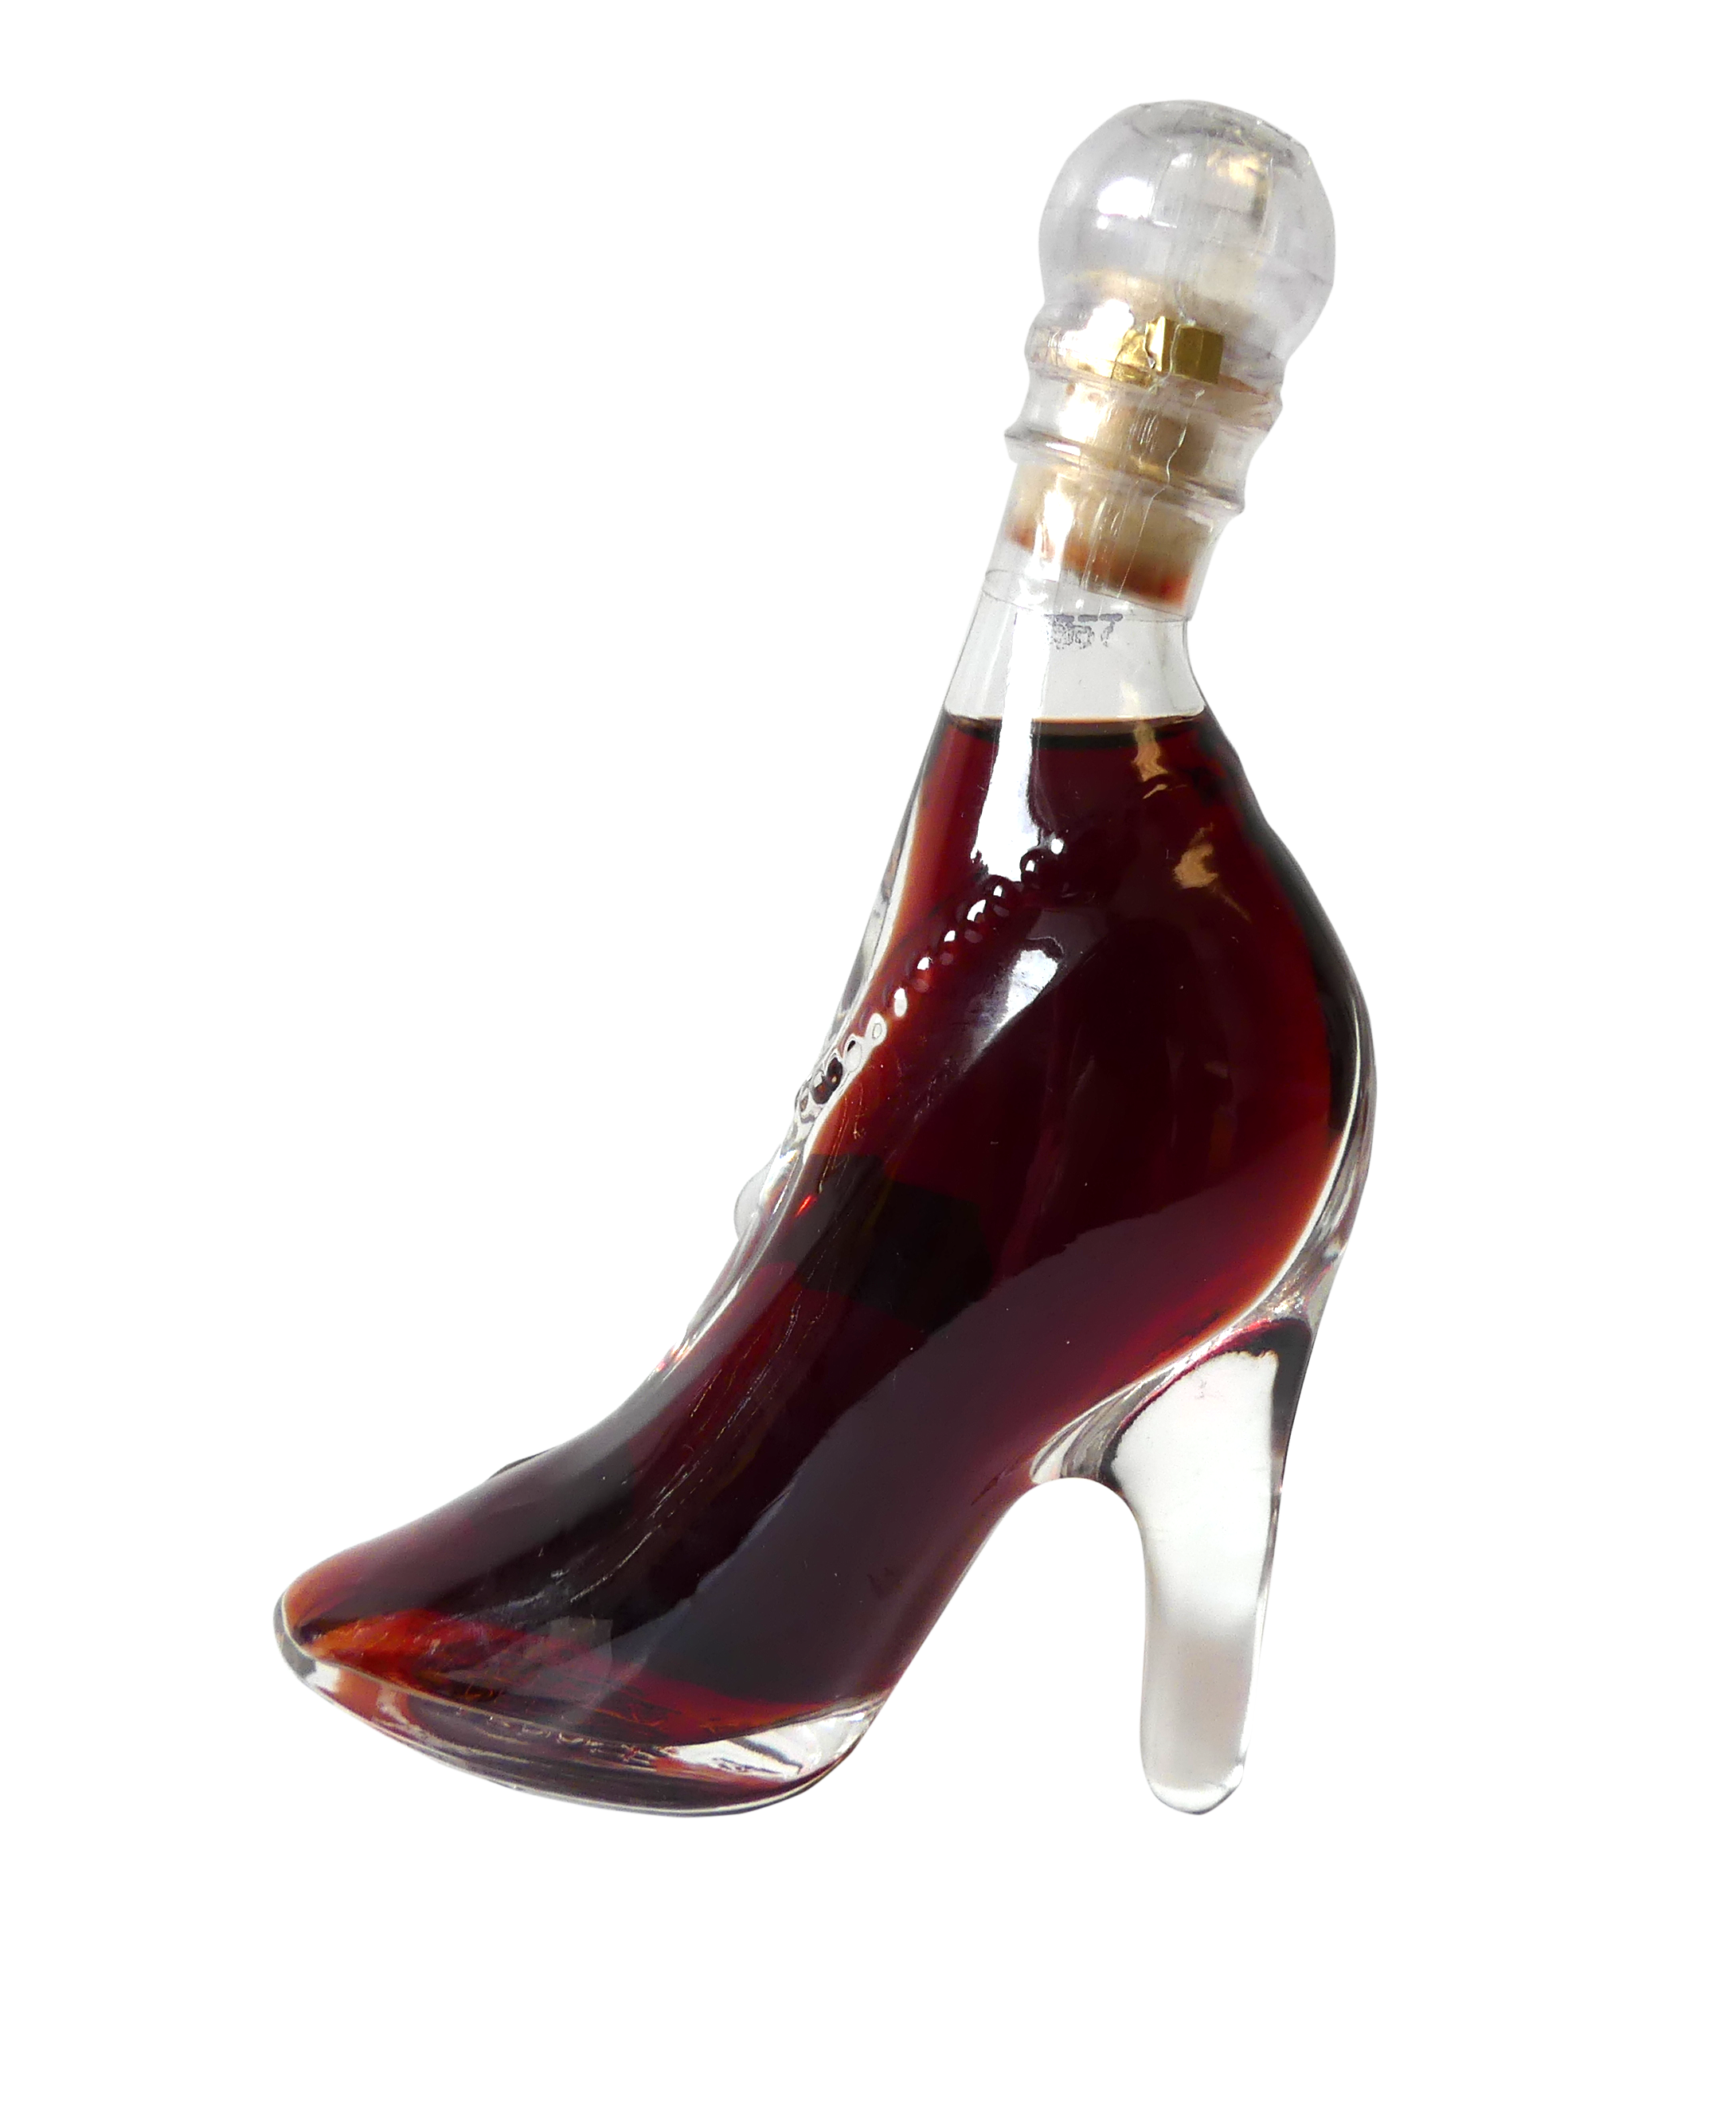 Nannerl liqueur Lesné fruit in bottle "Glass horseshoe" 0.04l - miniature